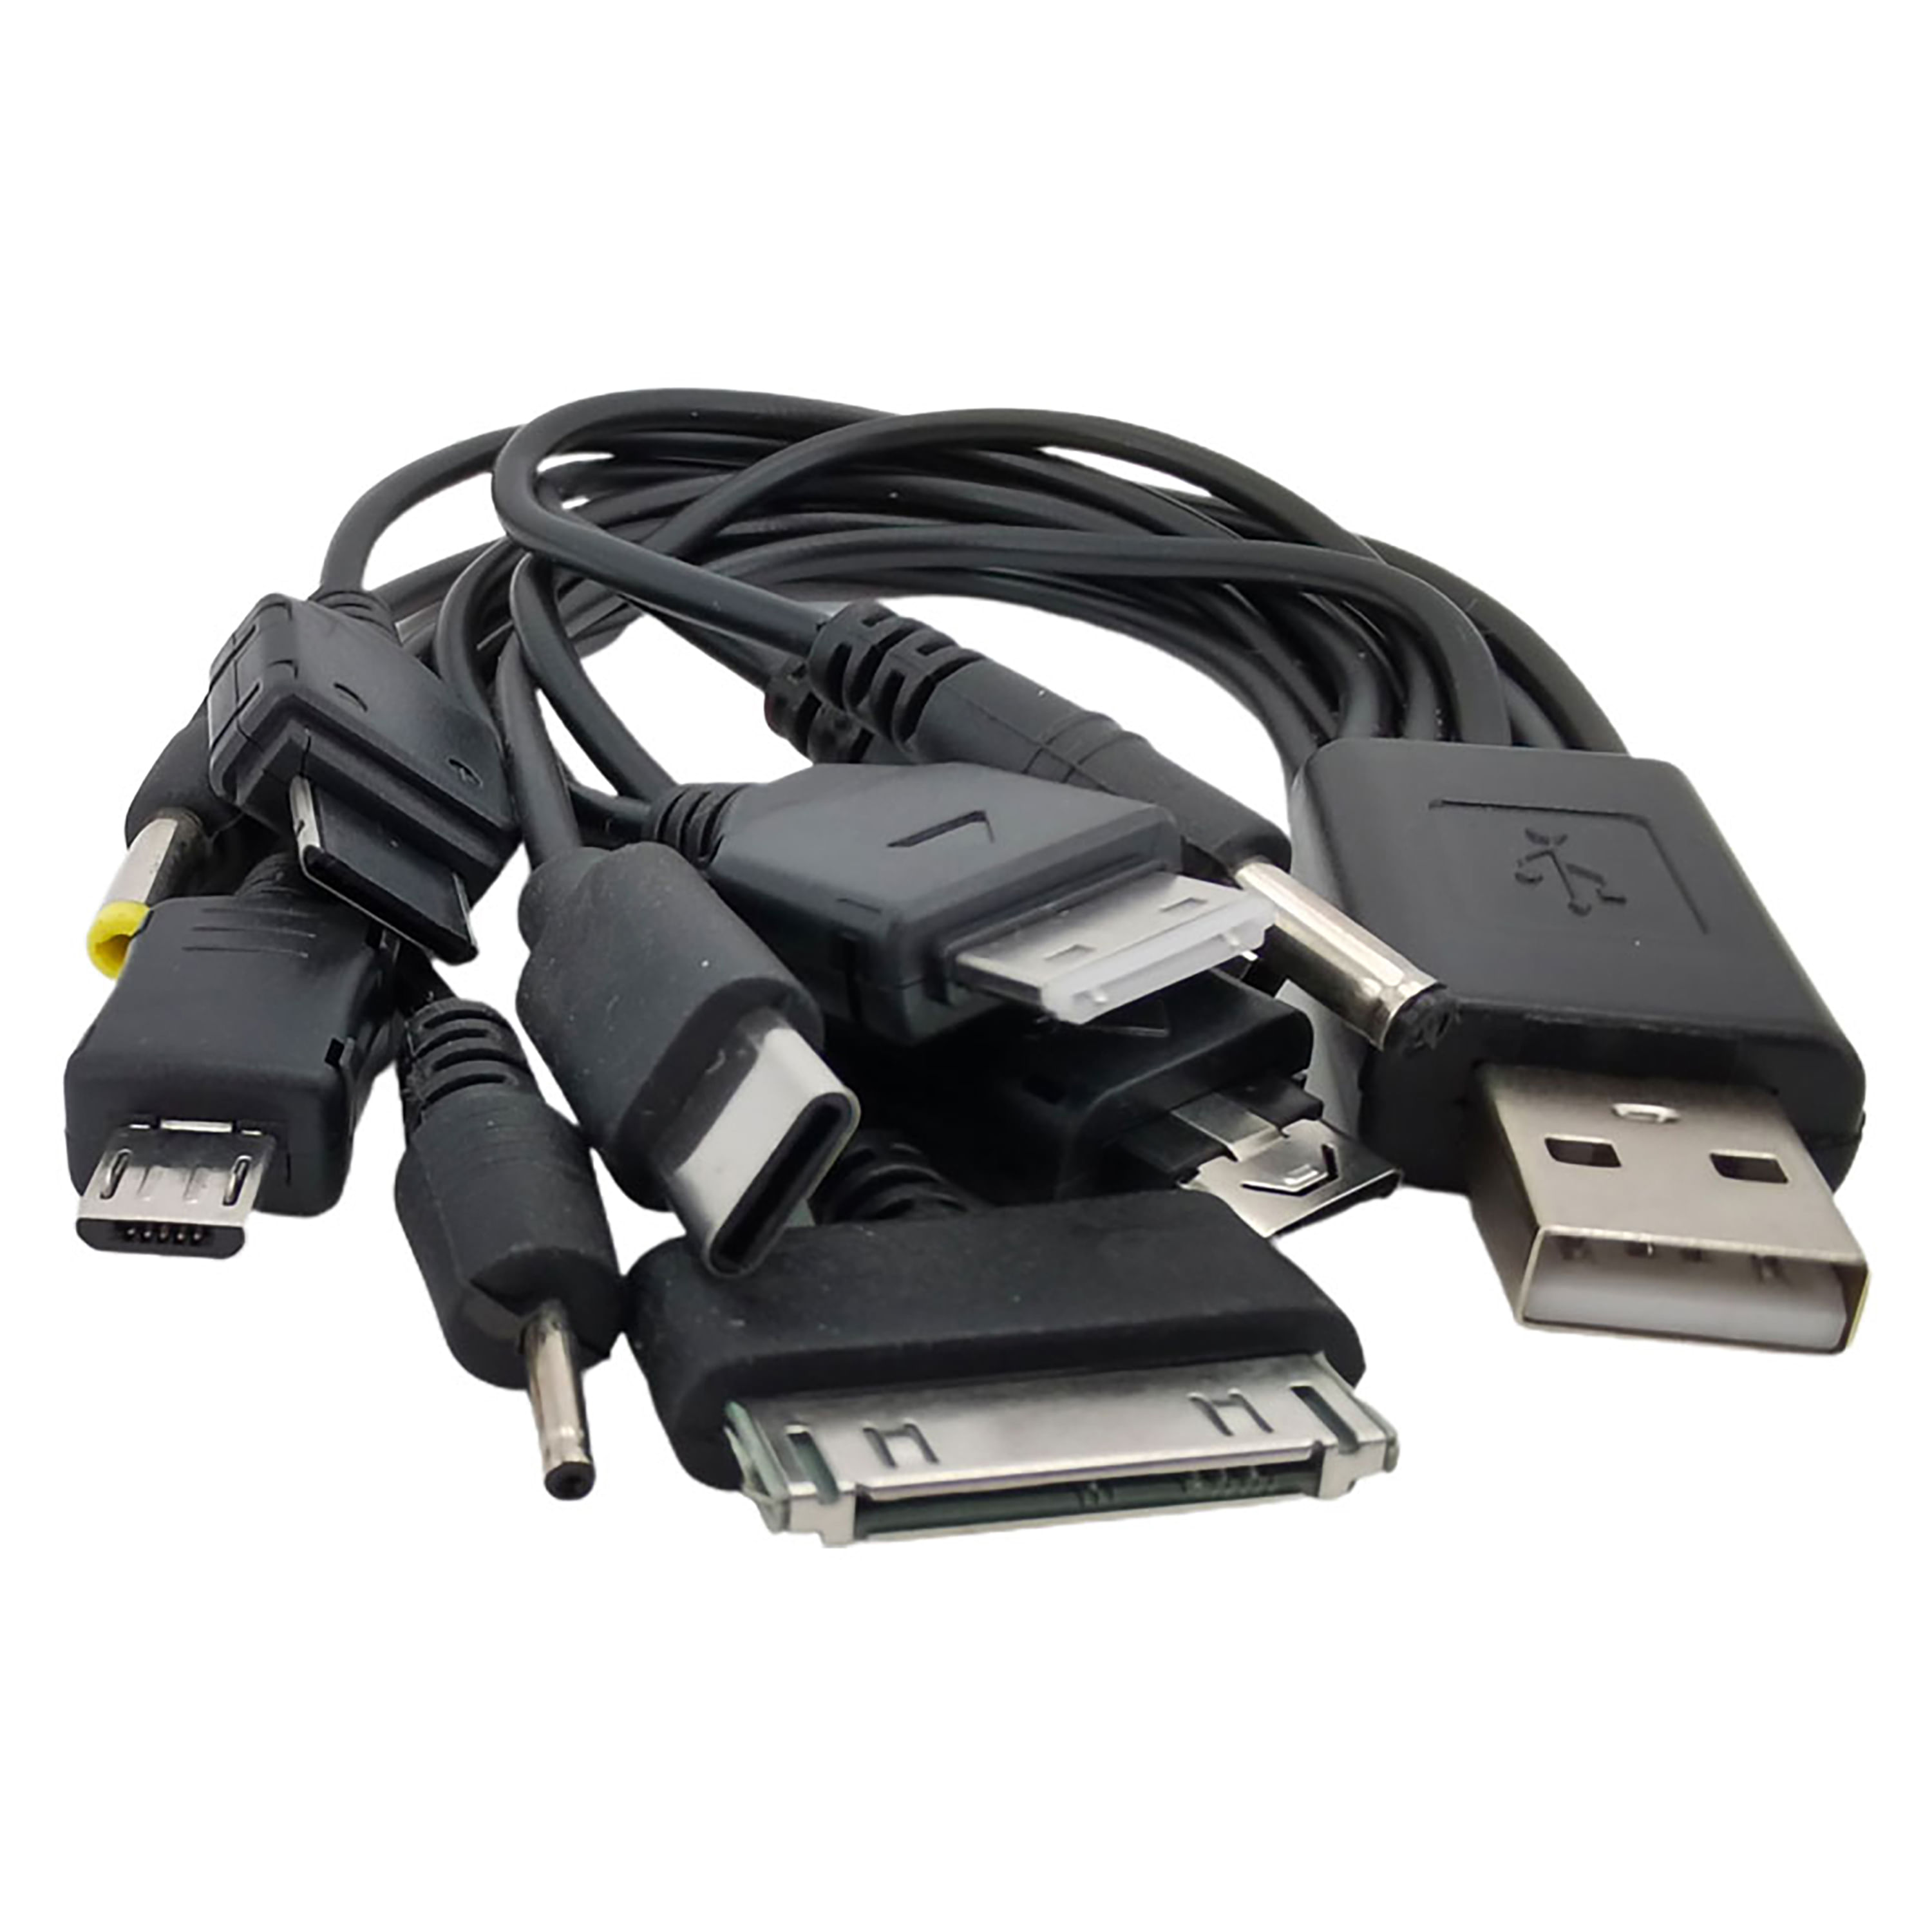 Extensor USB Multi funcional Guatemala